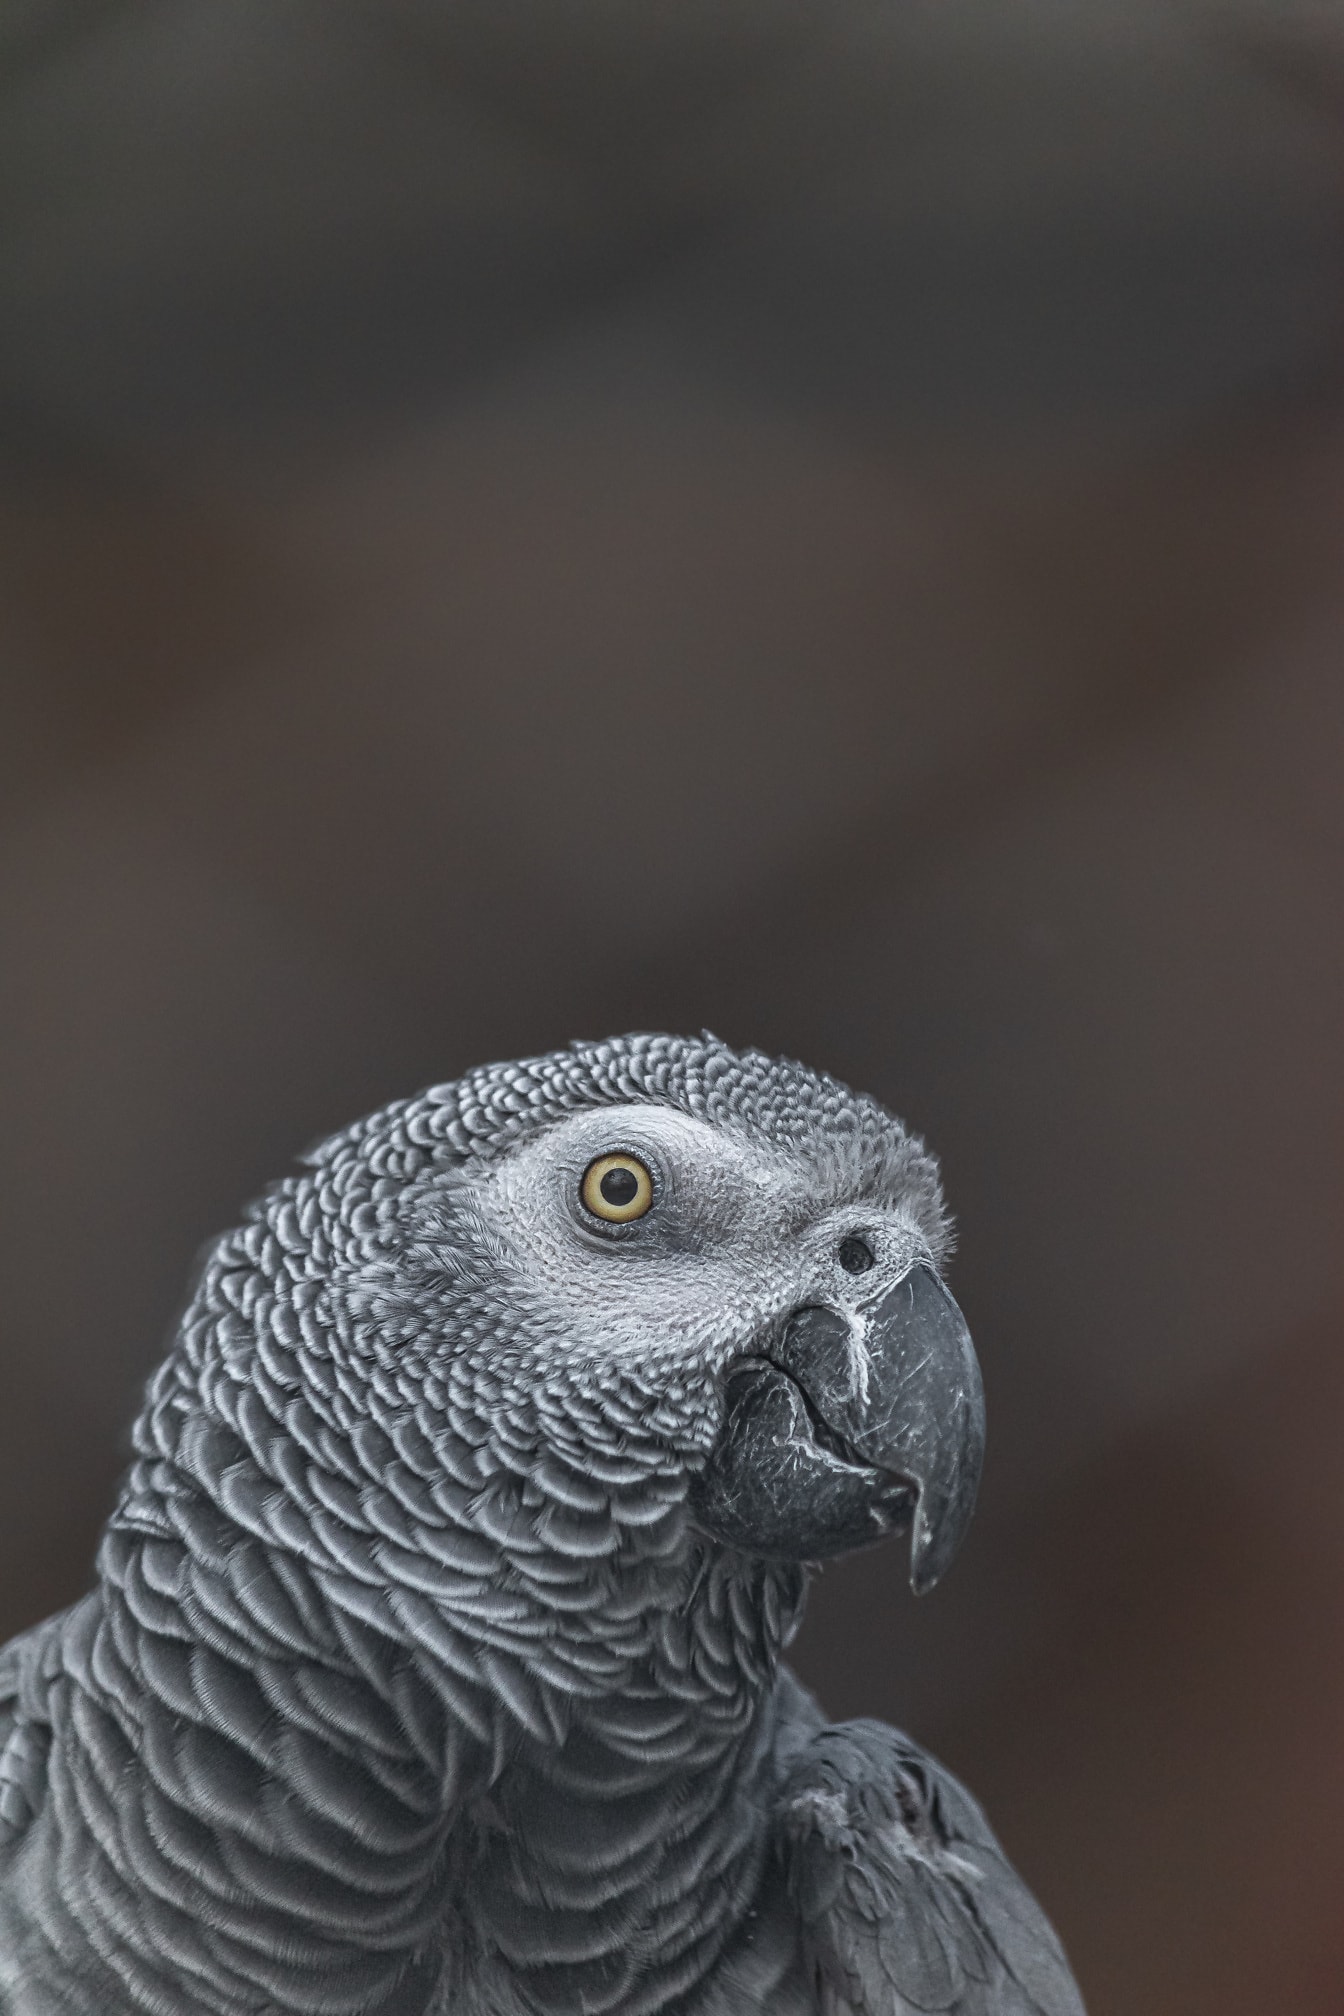 Afrikansk grå papegøje (Psittacus erithacus) fuglenærbillede af hoved og næb